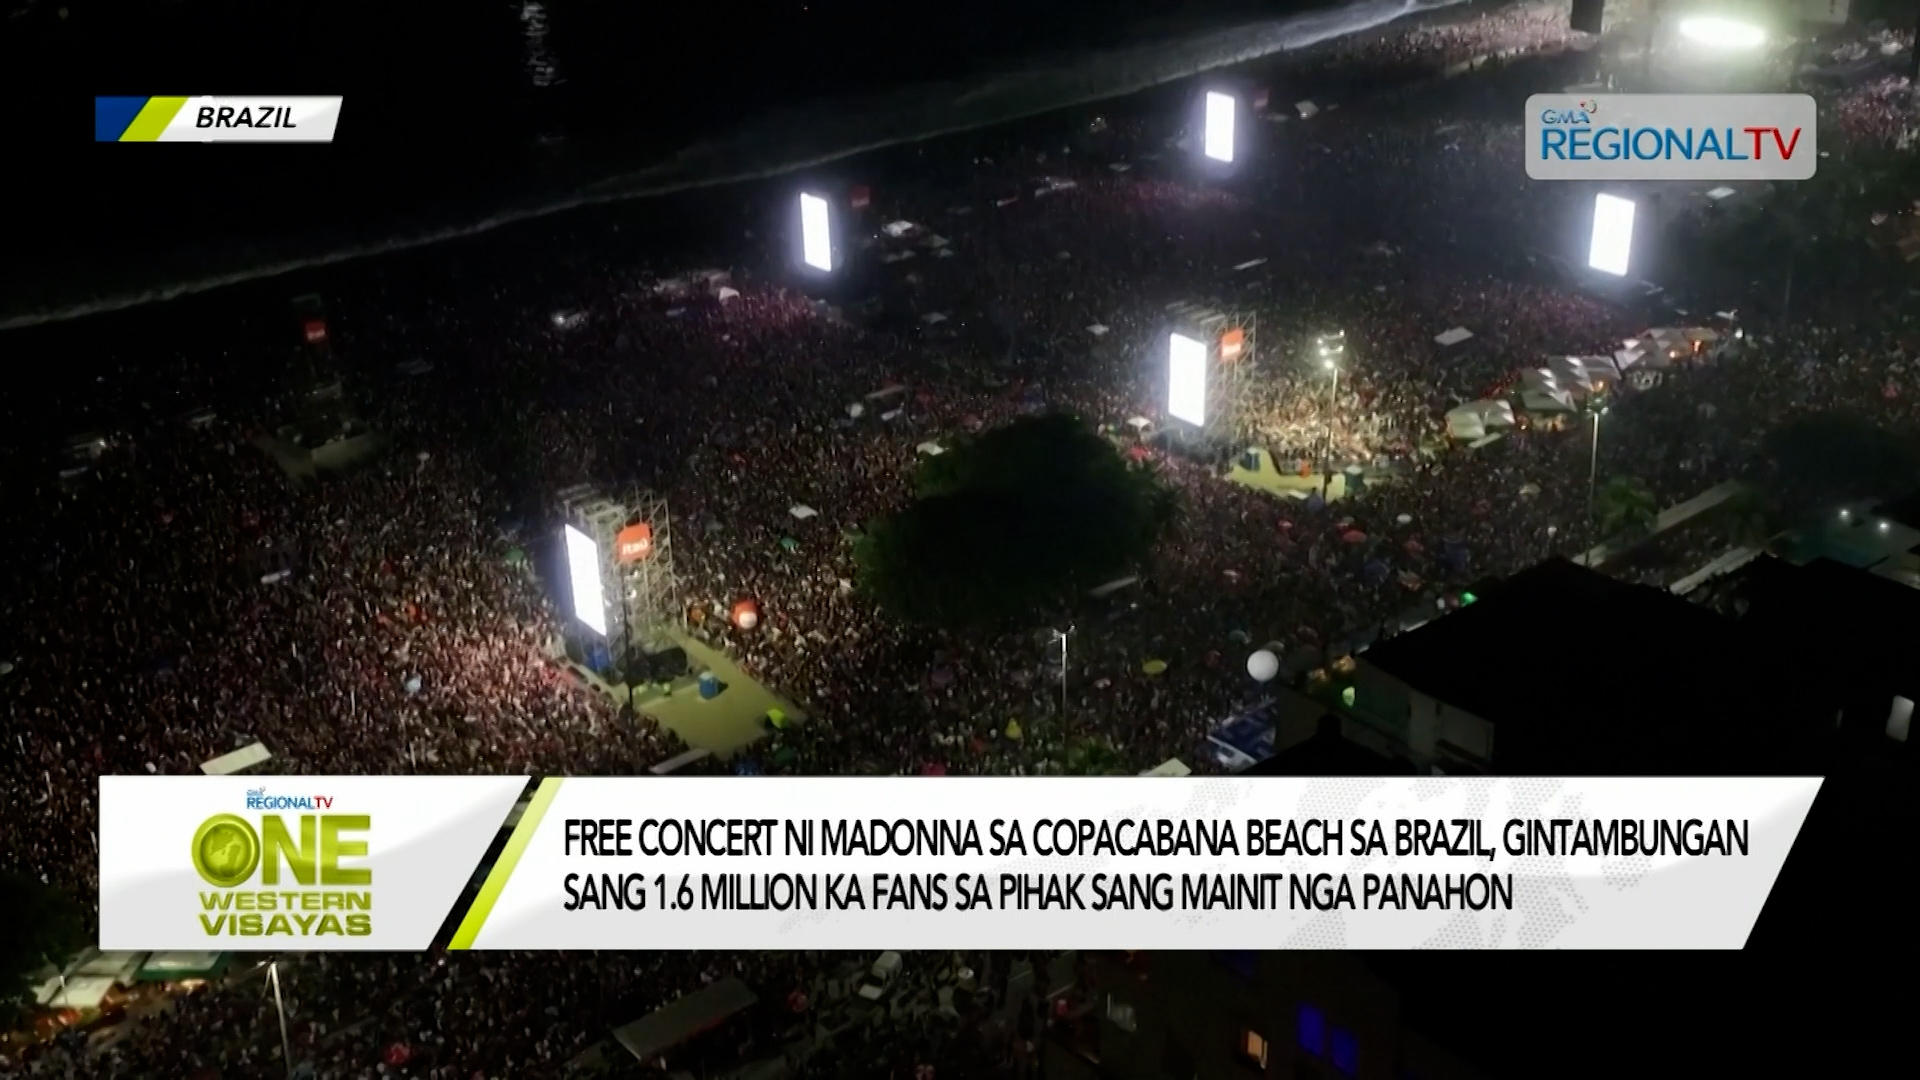 Free concert ni Madonna sa Copacabana Beach sa Brazil, gindagsa apisar mainit